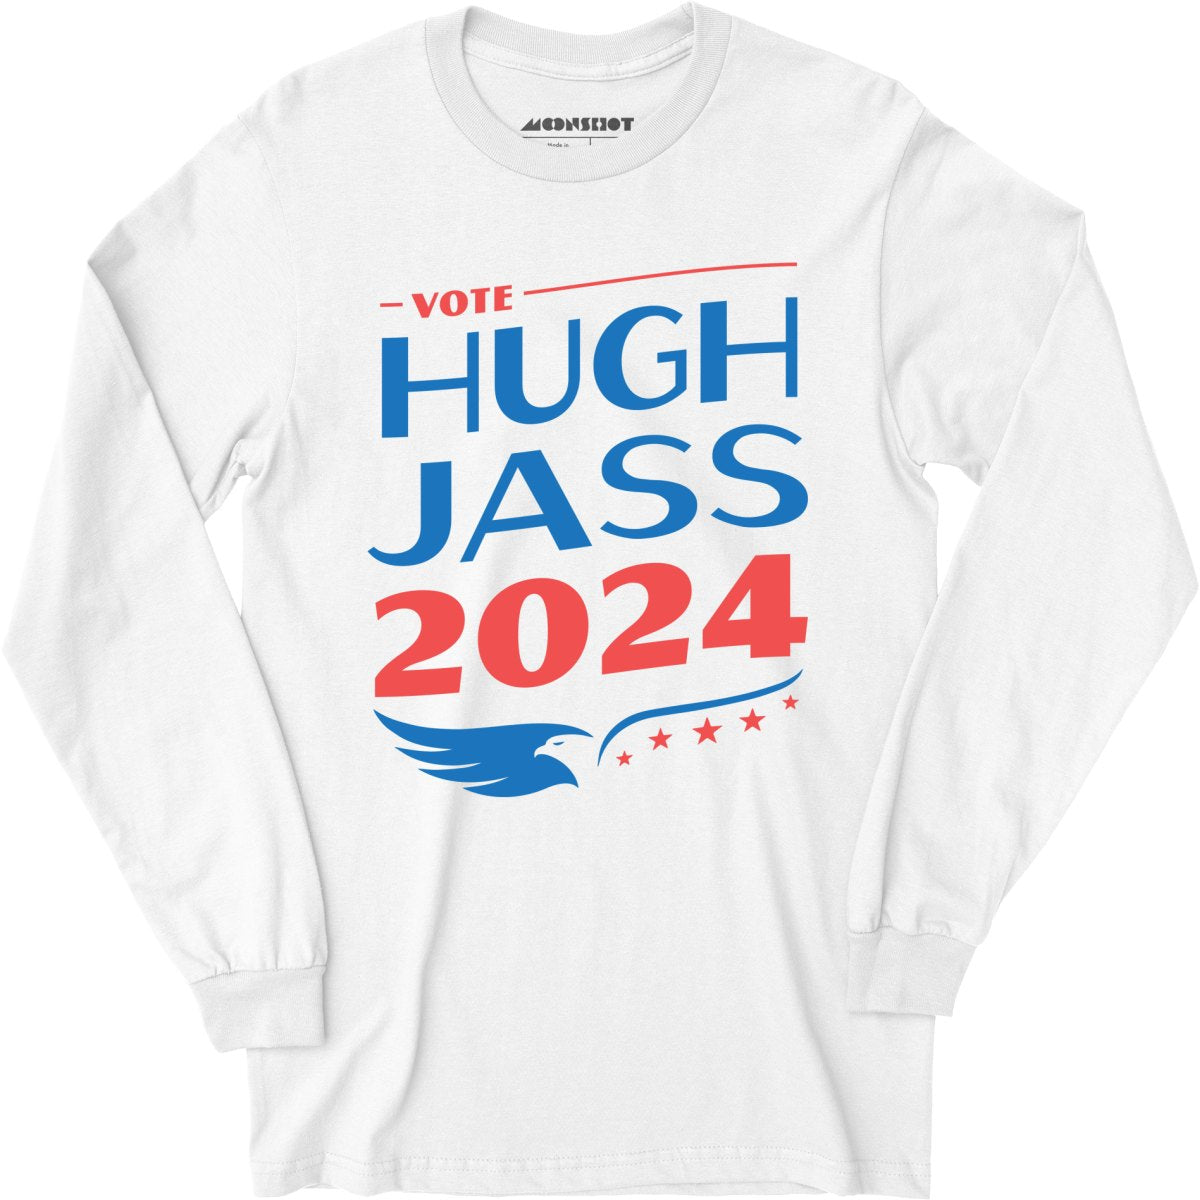 Hugh Jass 2024 - Long Sleeve T-Shirt